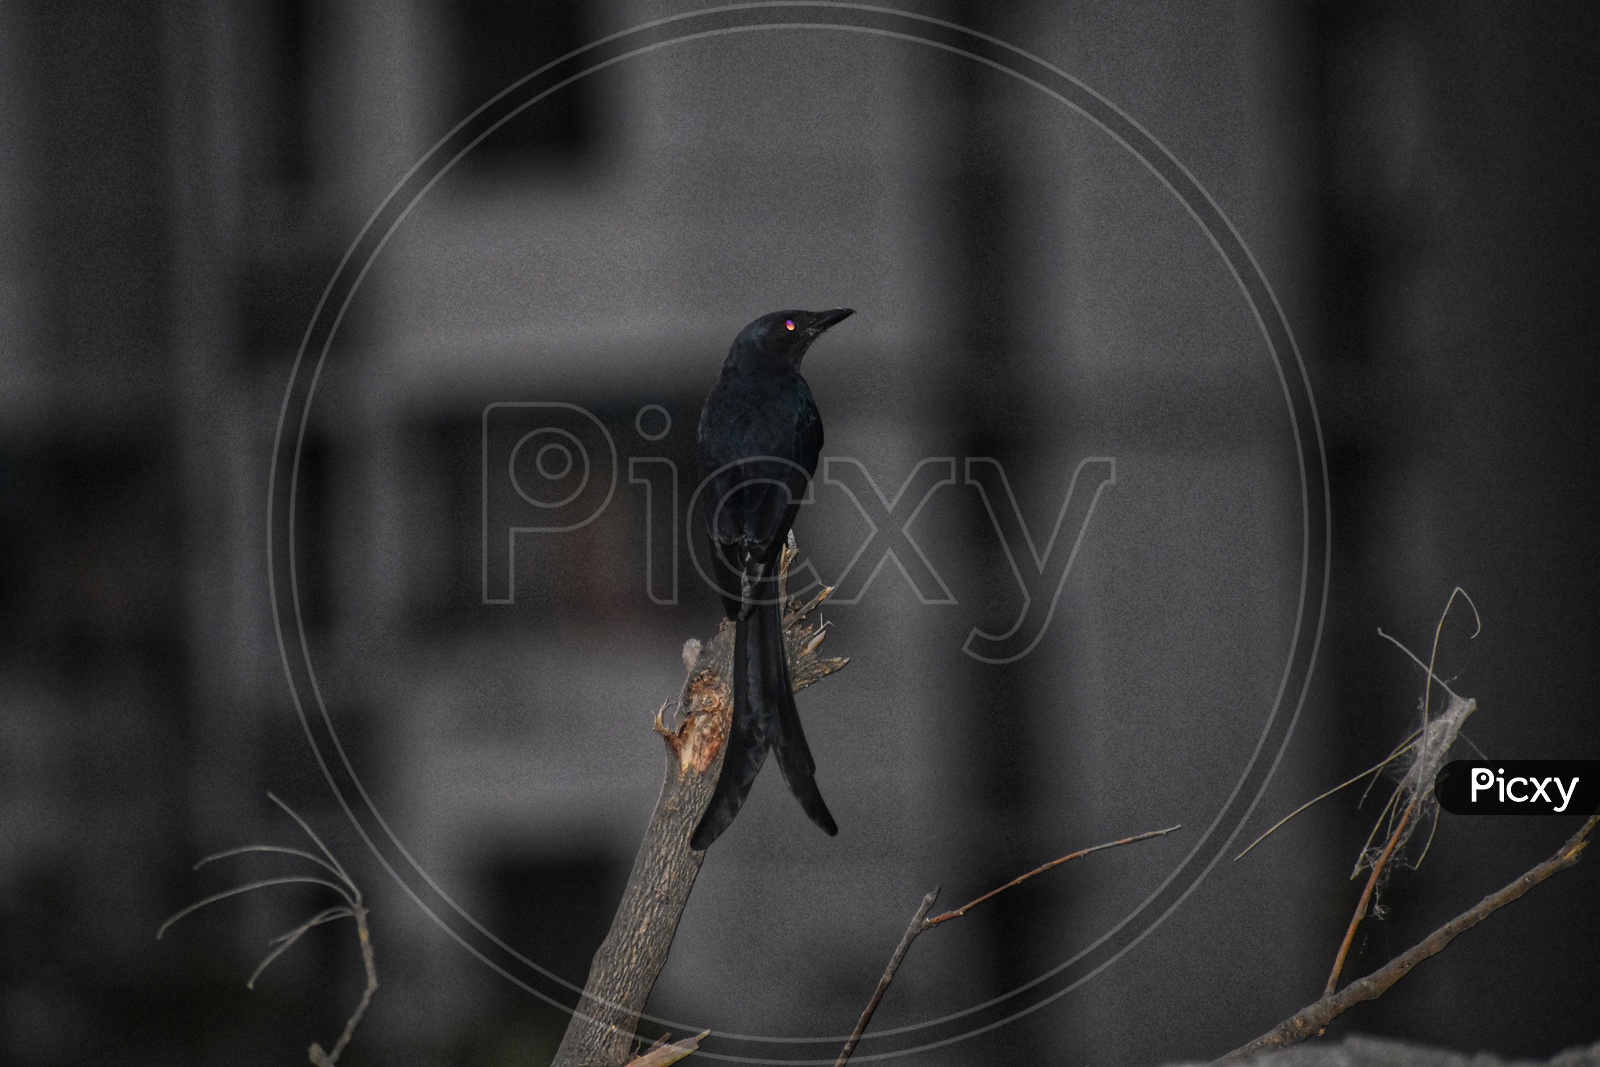 The black bird